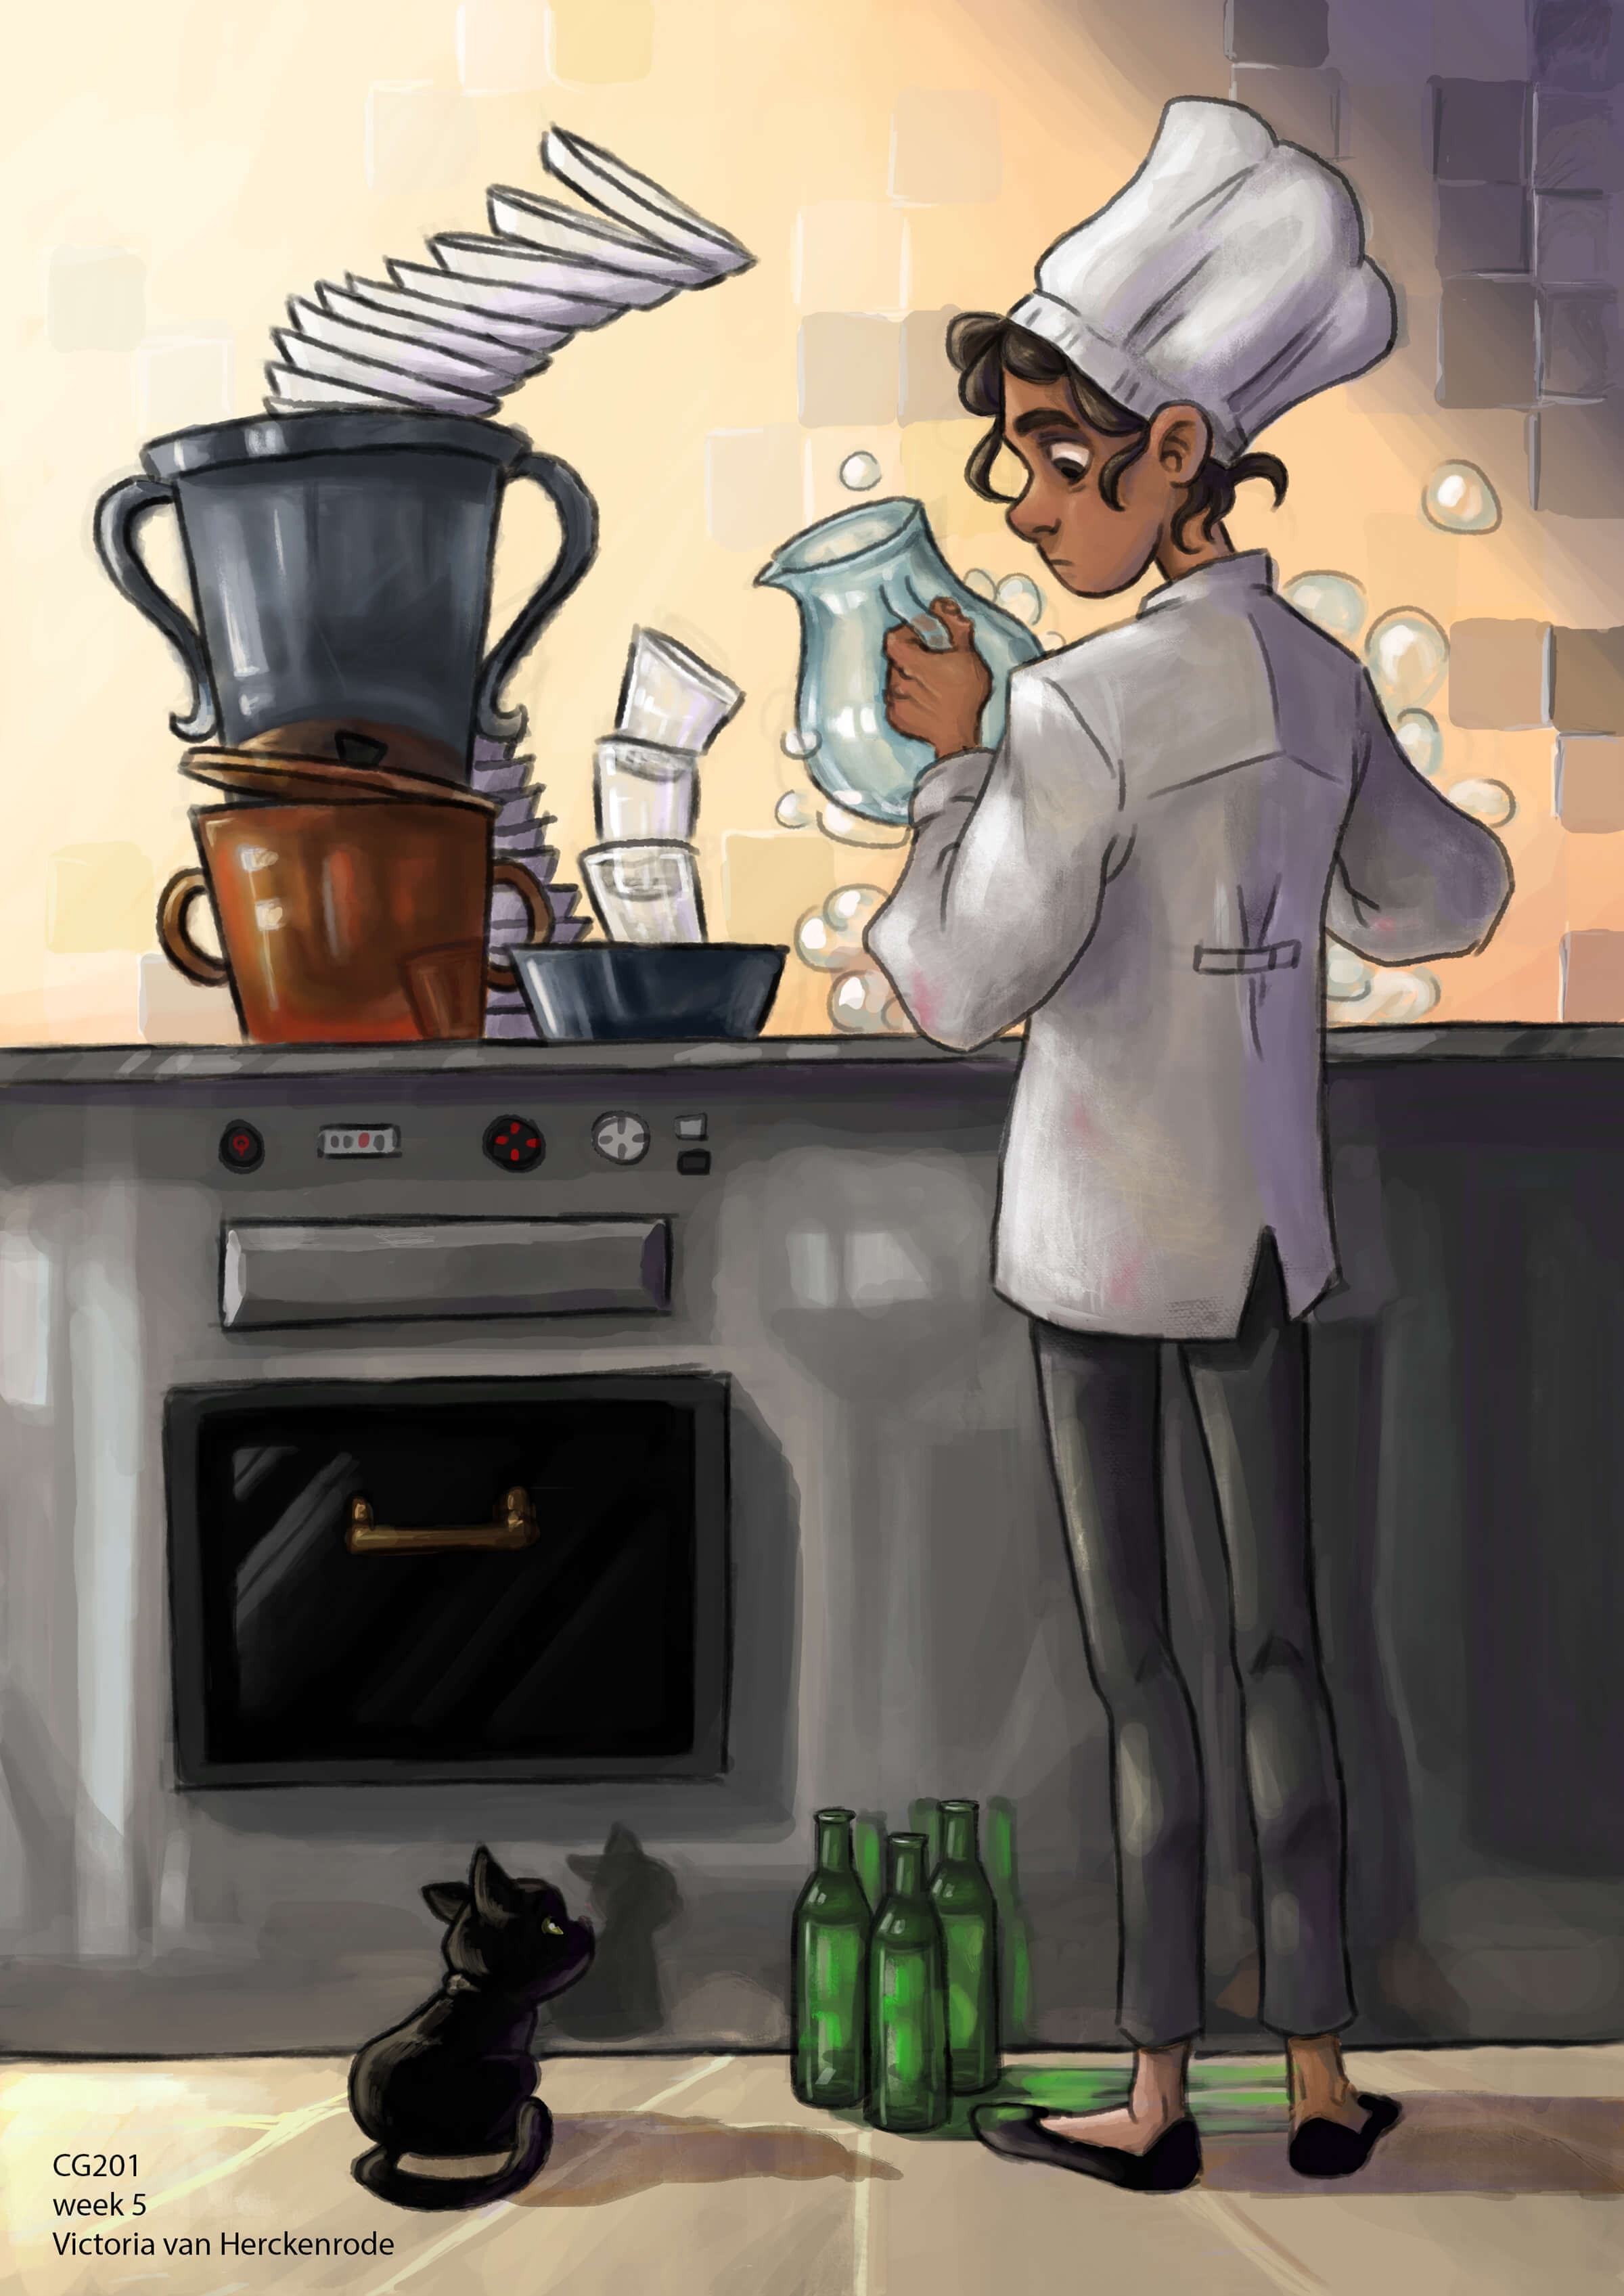 Una mujer con uniforme de cocinera lavando junto a una pila inclinada de platos mira a un pequeño gatito negro.